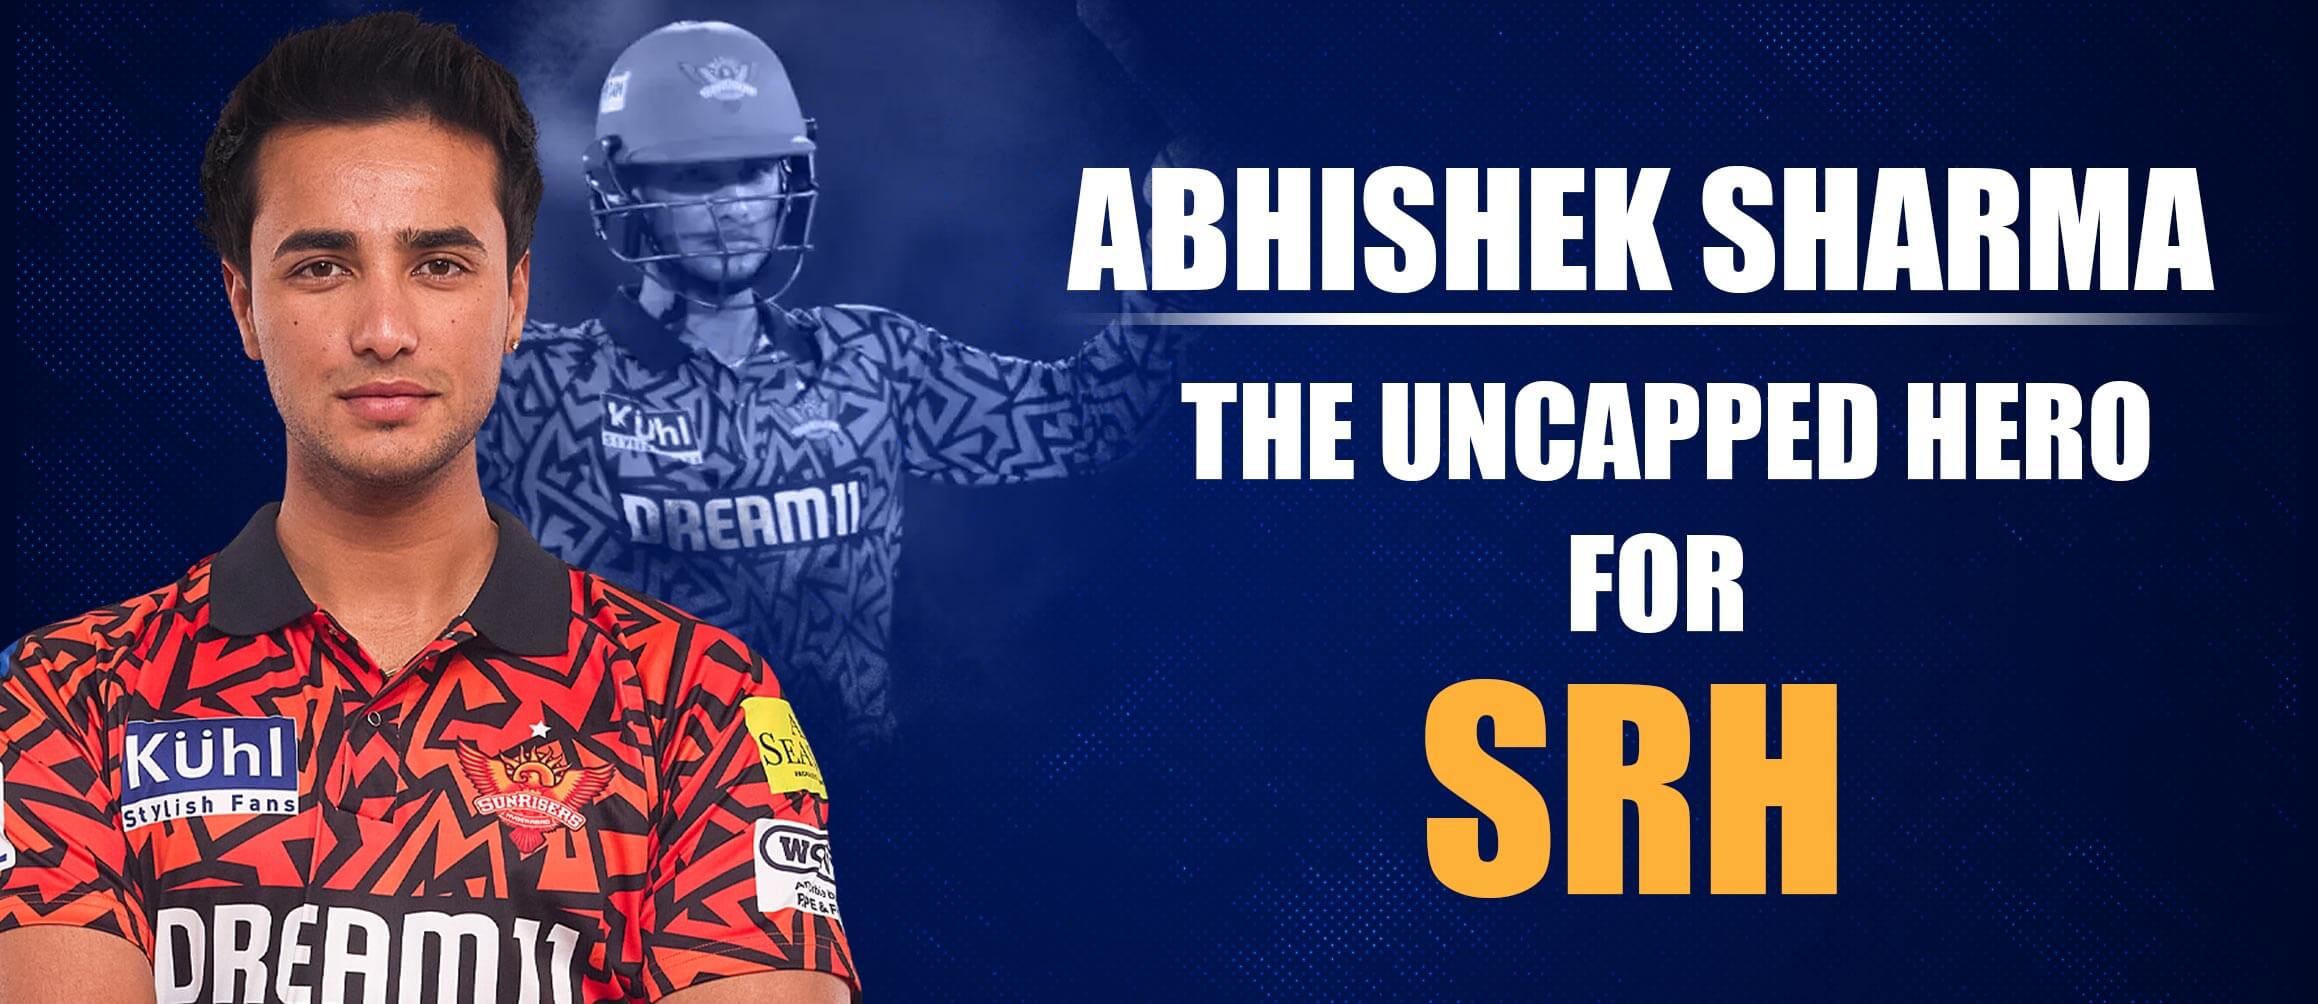 Abhishek Sharma achieves the milestone of 1,000 IPL Runs for SRH